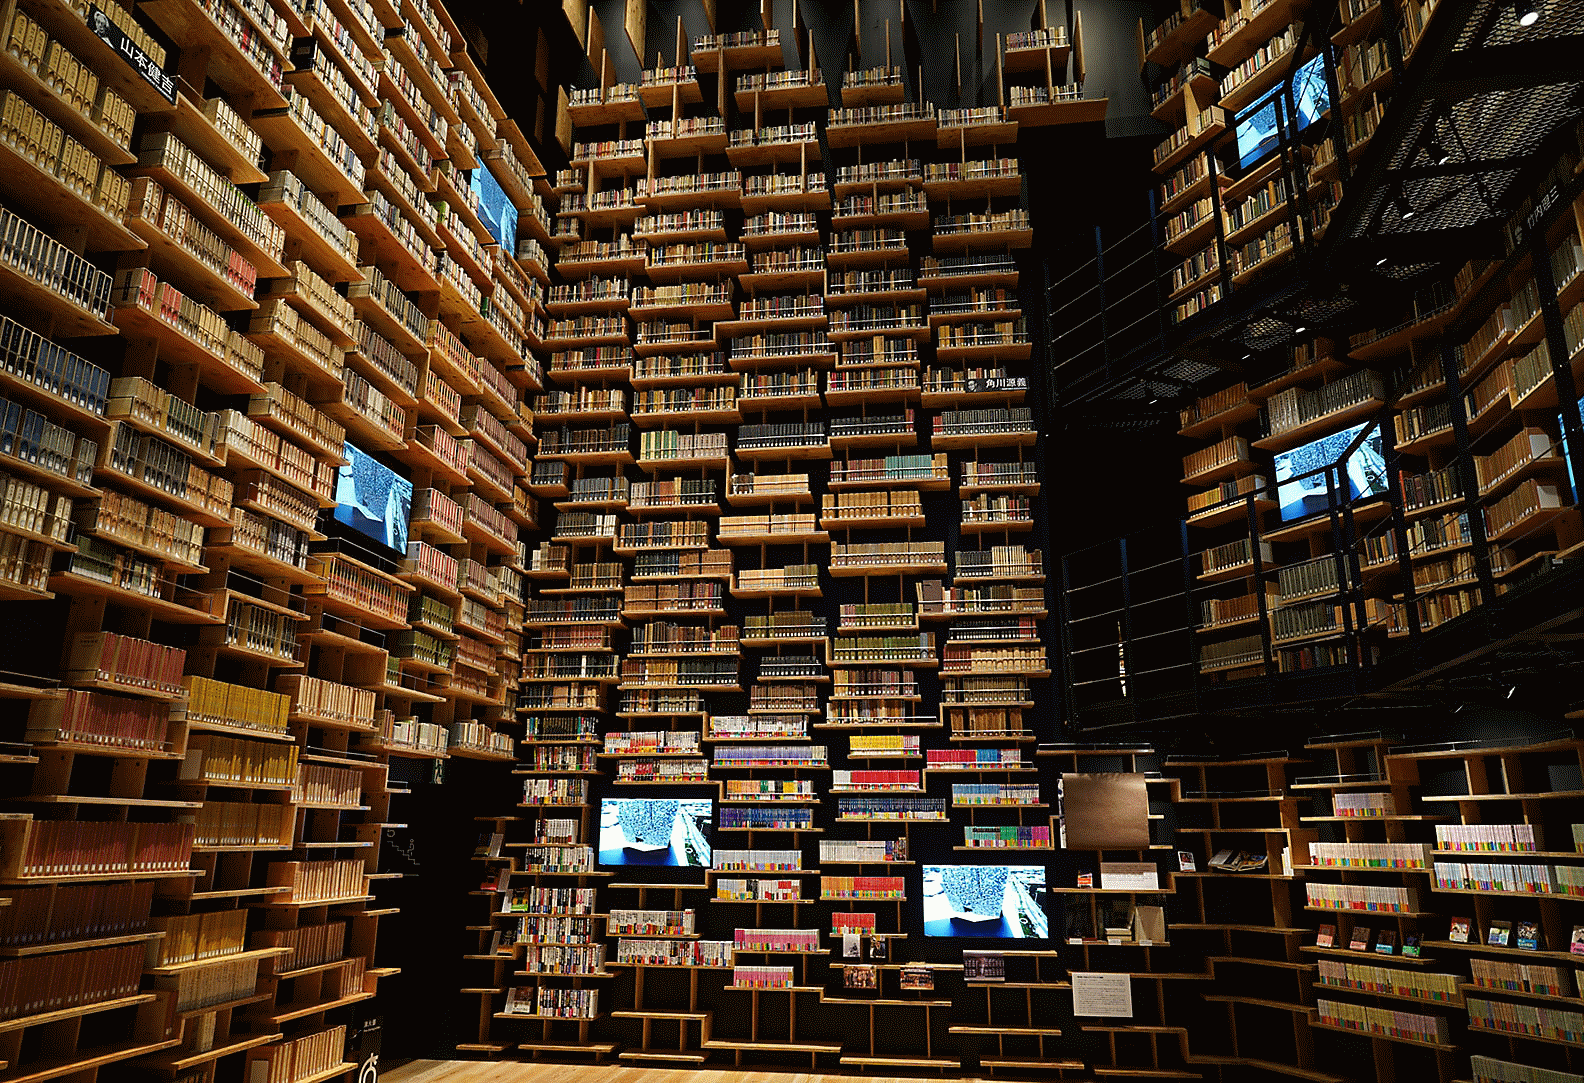 Záber interiéru knižnice vytvorený týmto objektívom s vysokým rozlíšením v každom rohu snímky